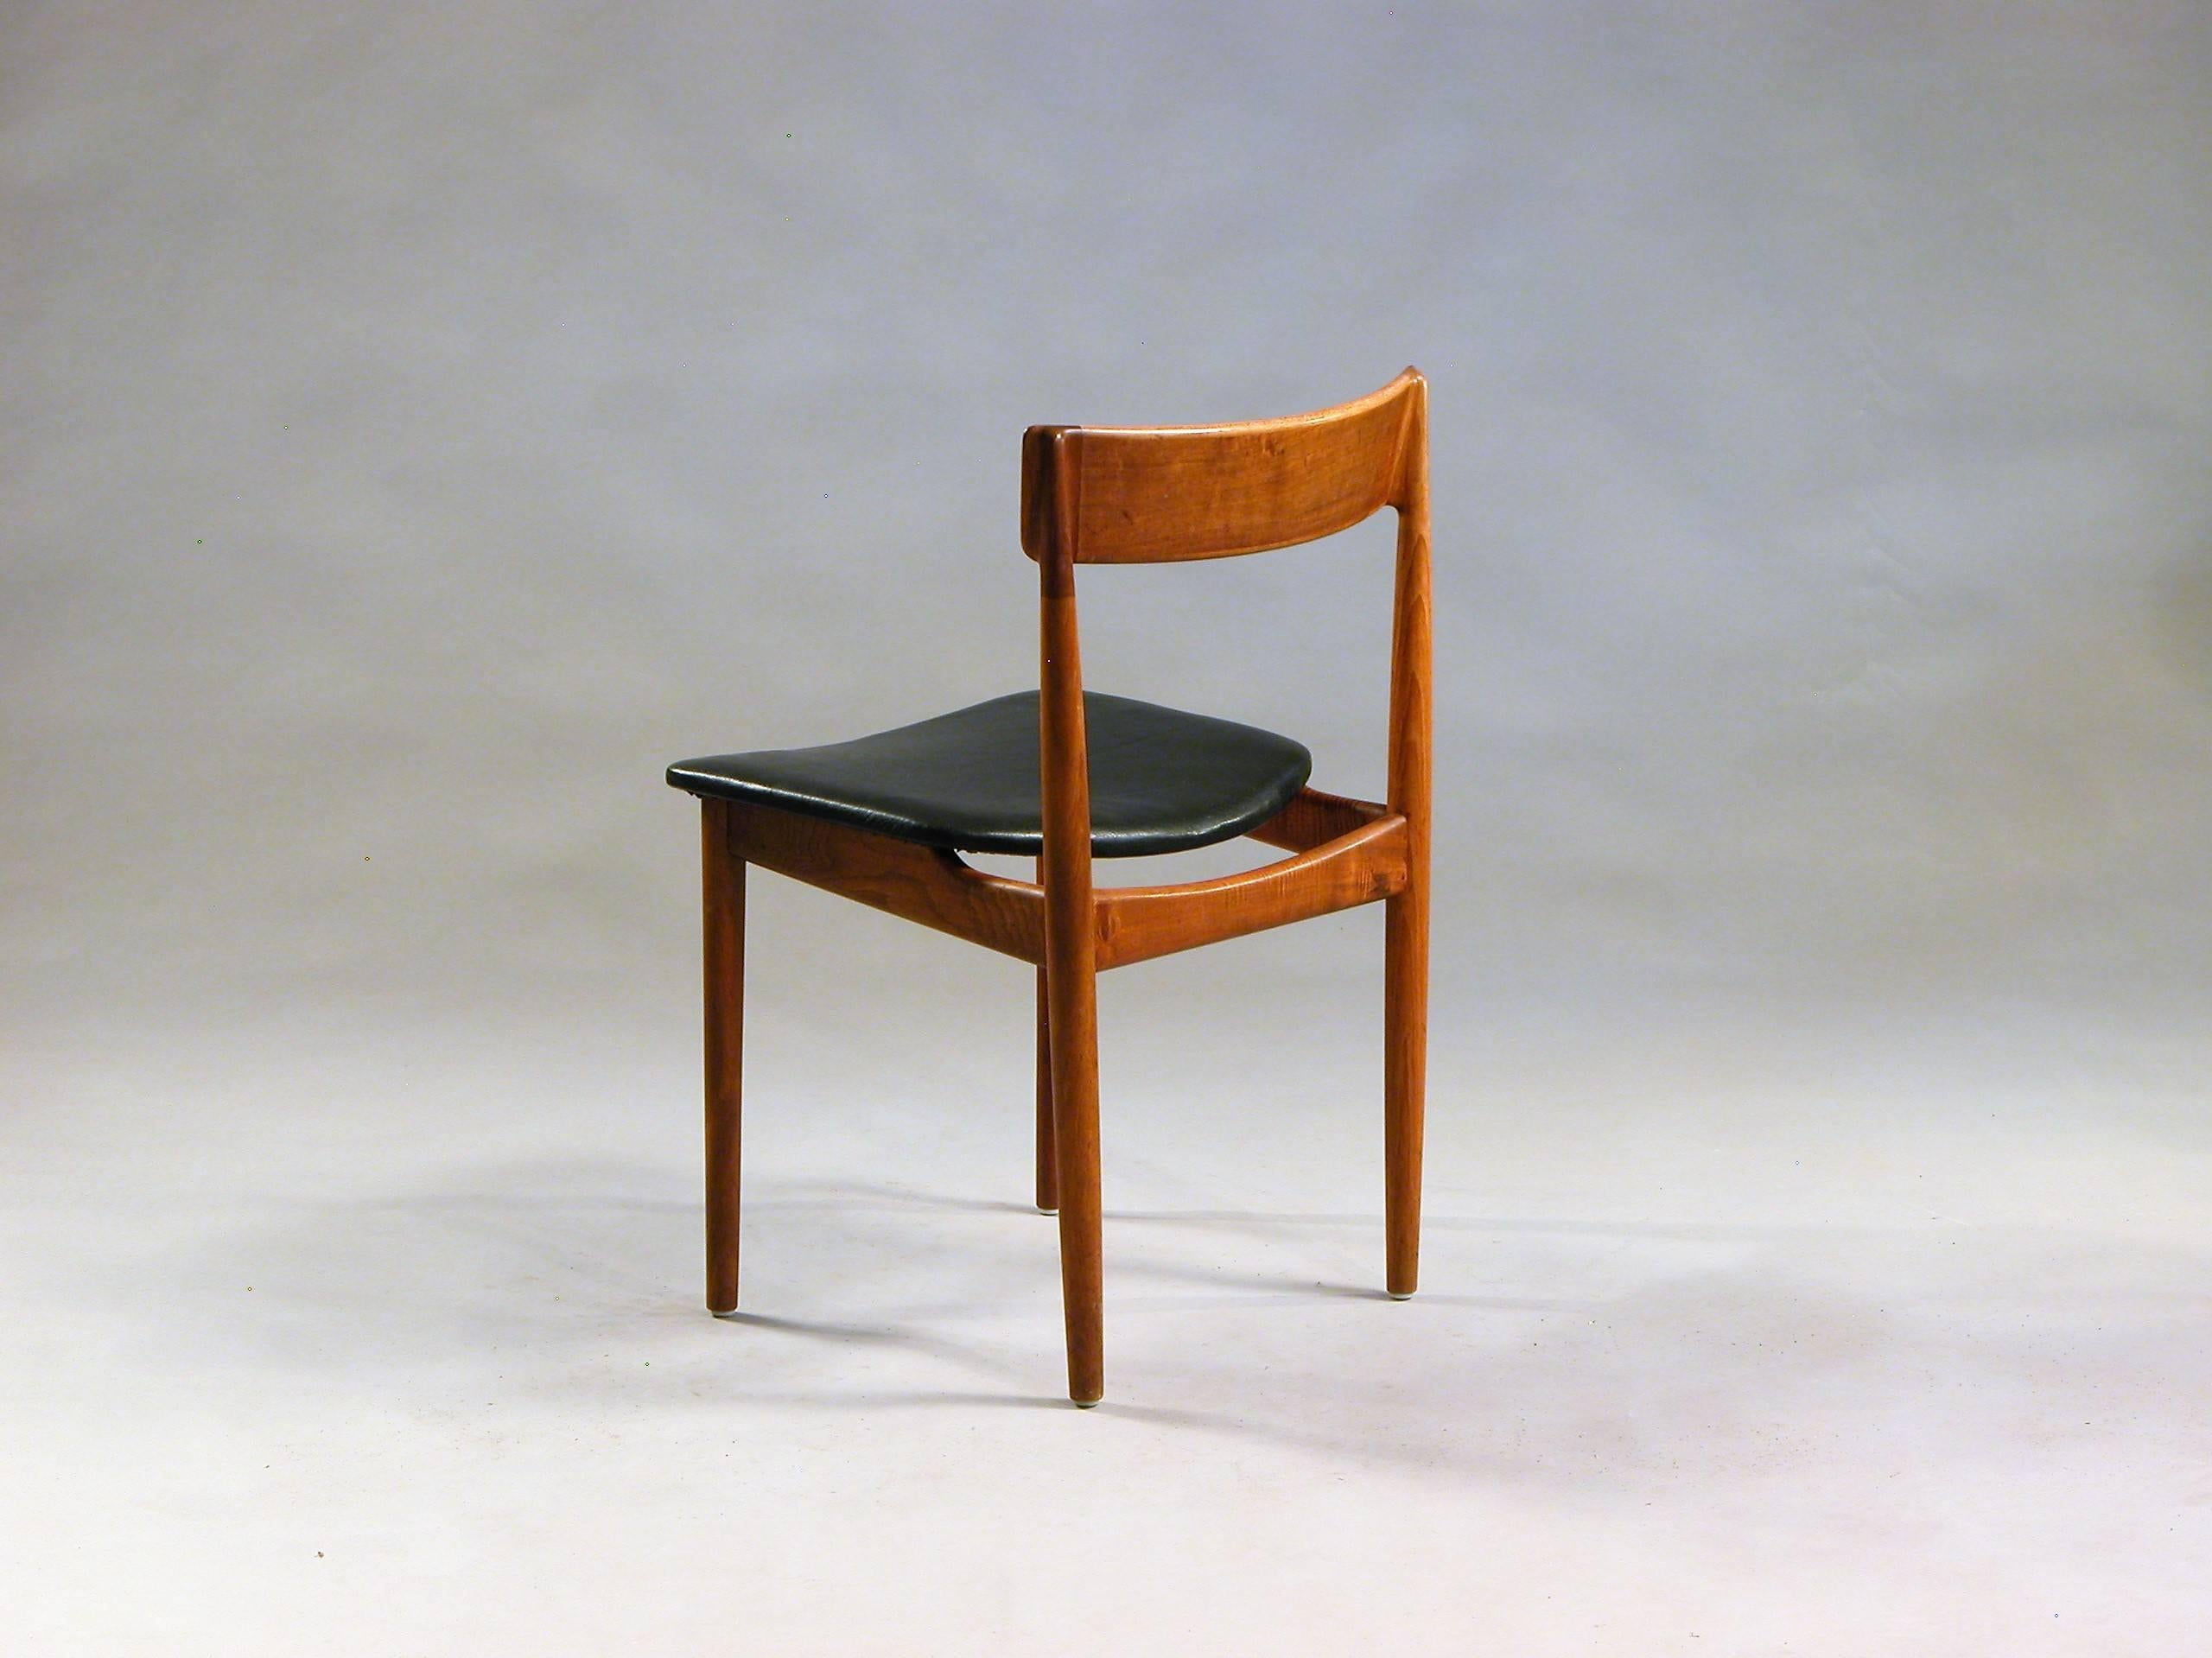 Danish 1960s Henry Rosengren Hansen Model 39 Teak Dining Chairs in Teak and Leather